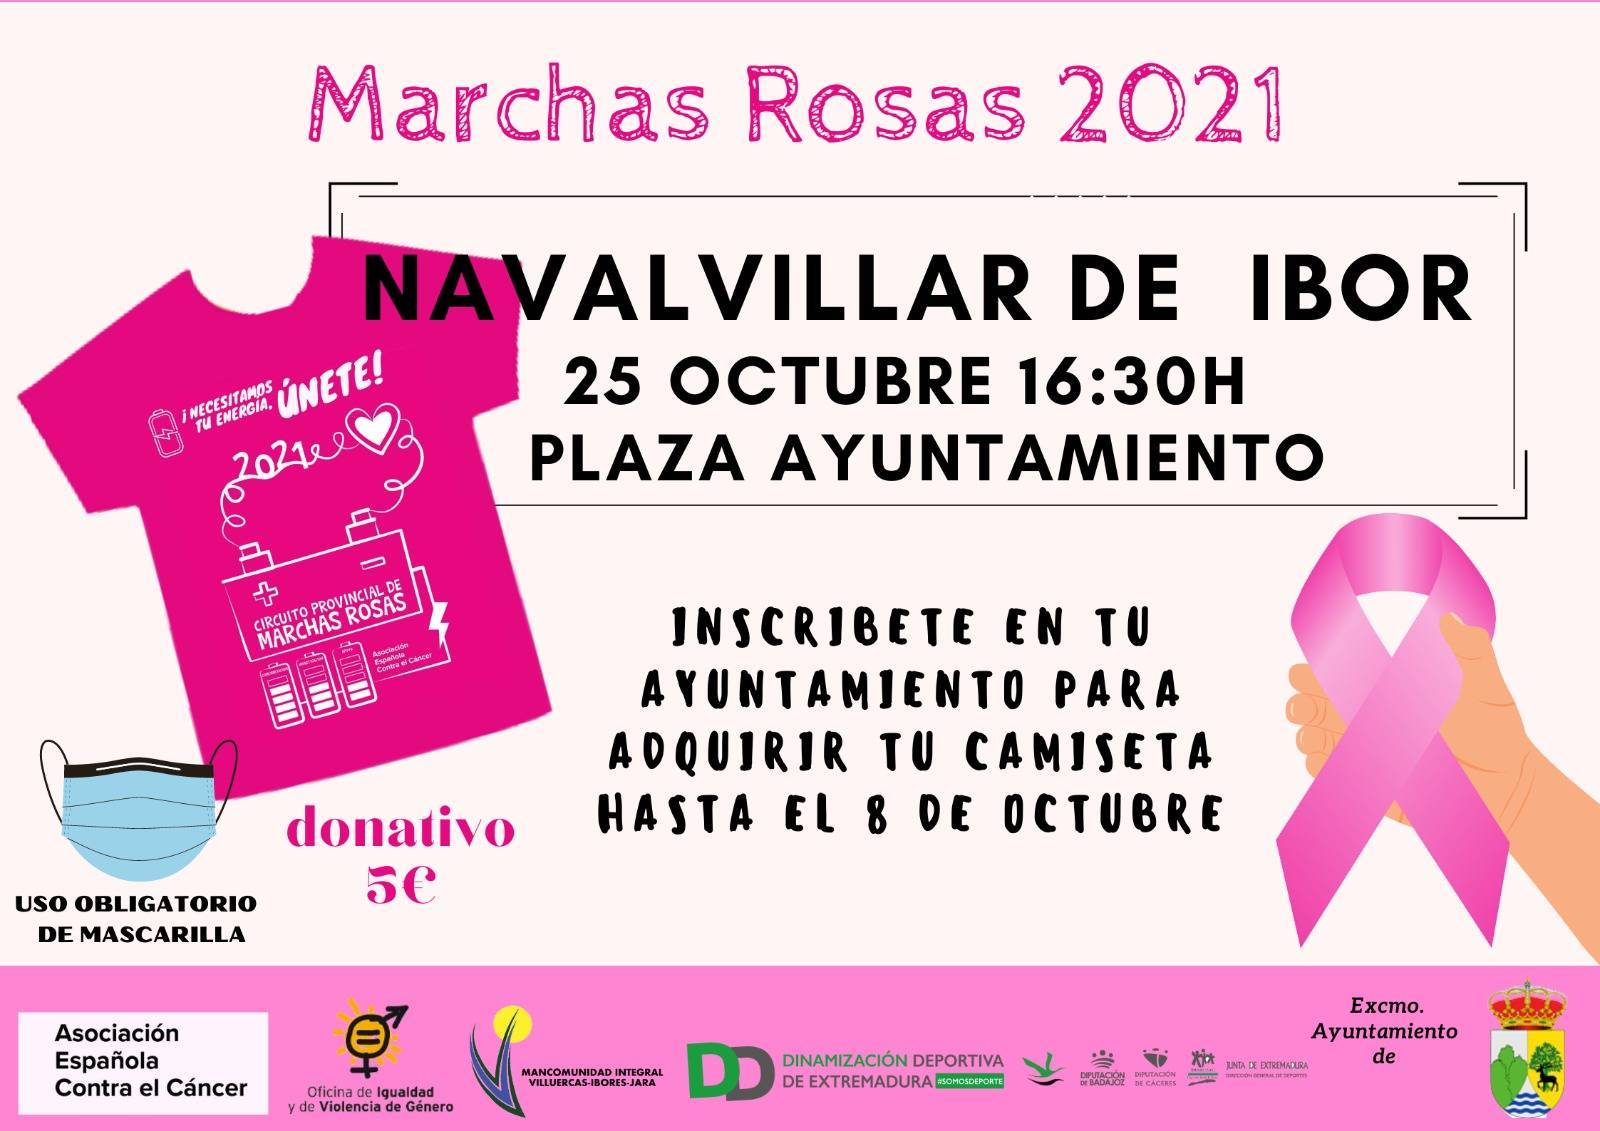 Marchas rosas (2021) - Navalvillar de Ibor (Cáceres)